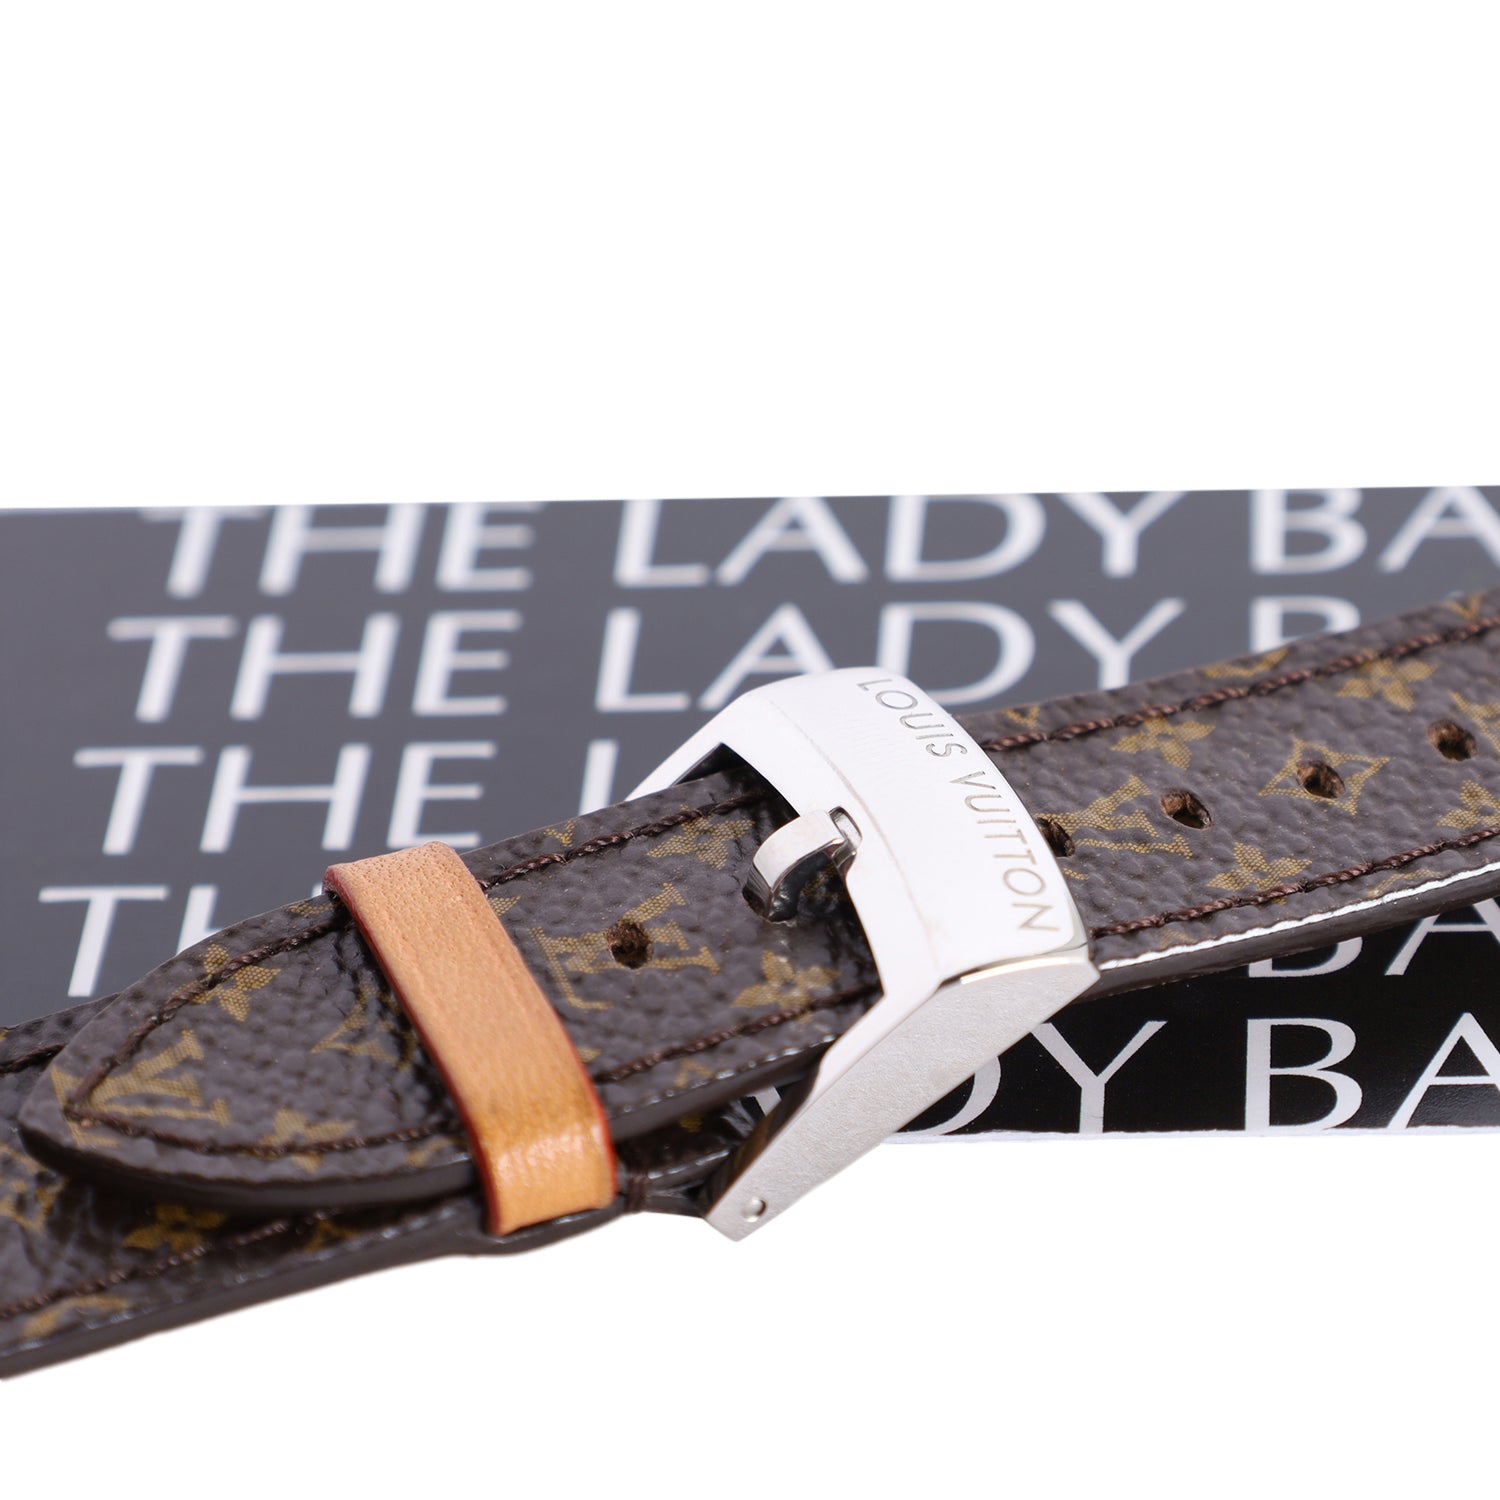 Louis Vuitton Tambour Aftermarket Bracelet/Strap